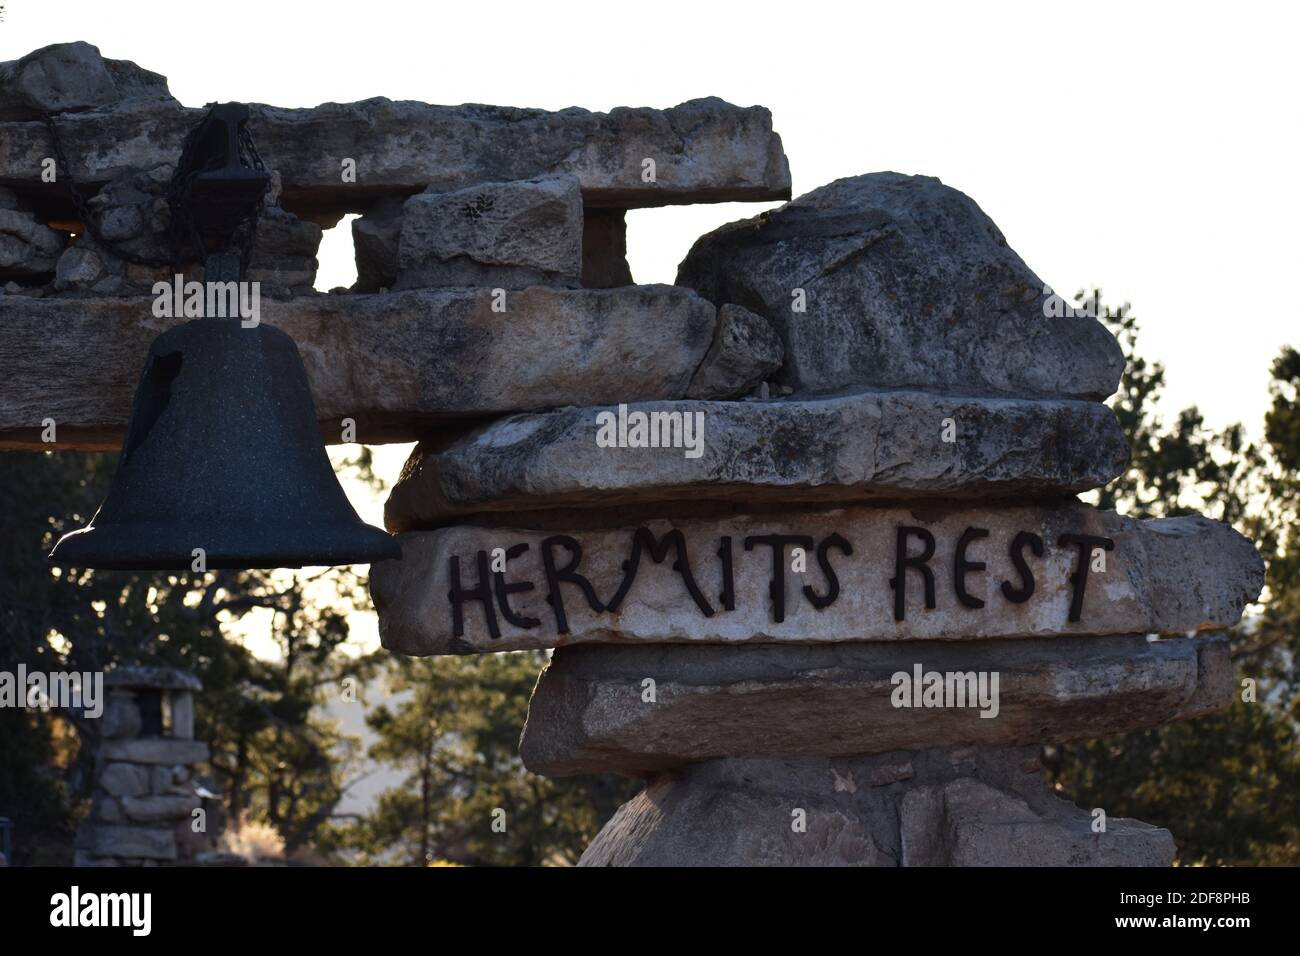 Un panneau métallique pour Hermites Rest et une cloche avec une fissure sur une arche de pierre dans le parc national du Grand Canyon, Arizona. Conçu par Mary Coulter. Banque D'Images